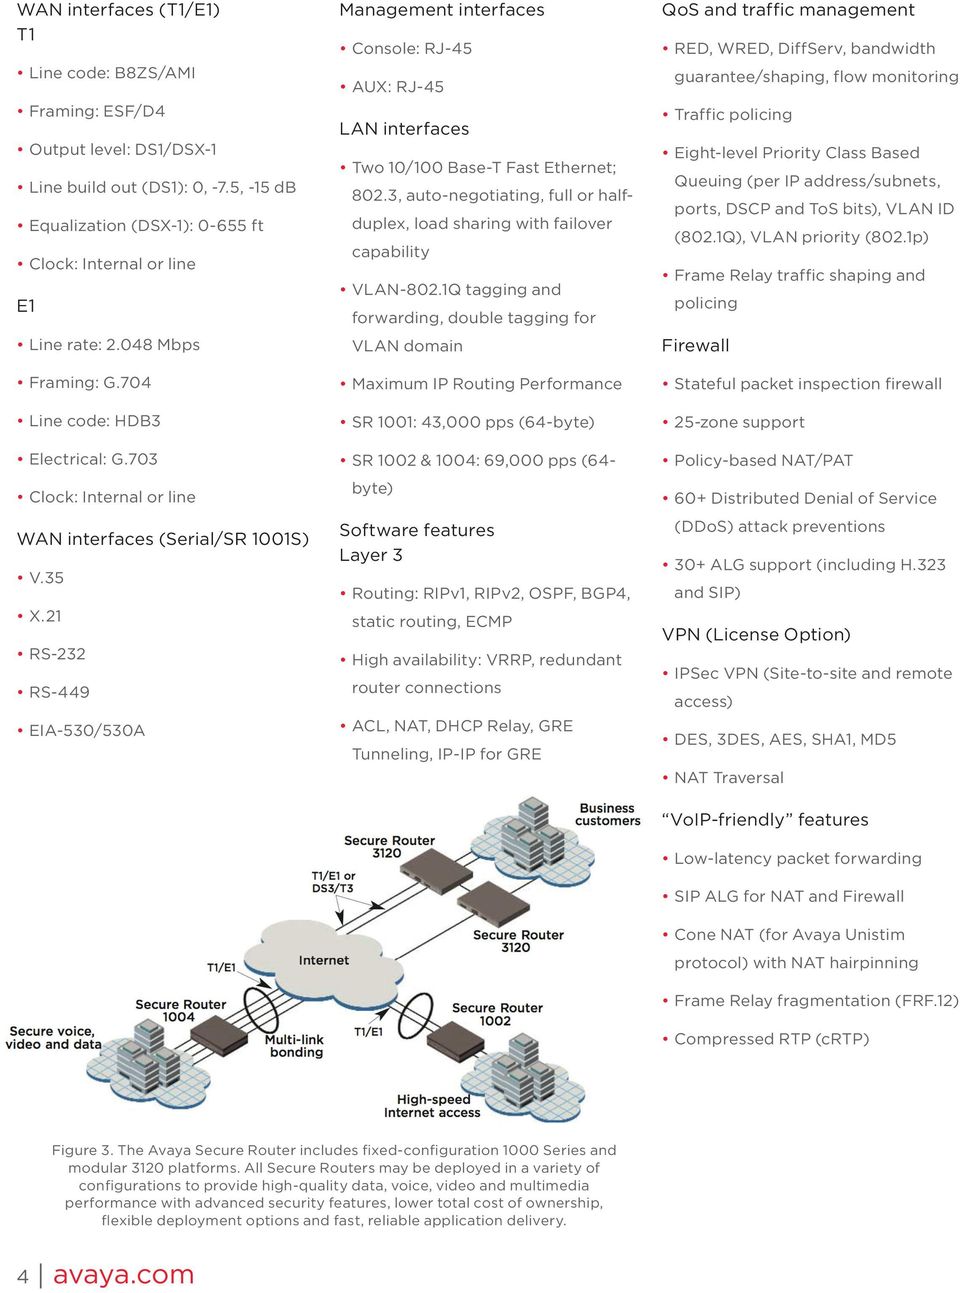 21 RS-232 RS-449 EIA-530/530A Management interfaces Console: RJ-45 AUX: RJ-45 LAN interfaces Two 10/100 Base-T Fast Ethernet; 802.